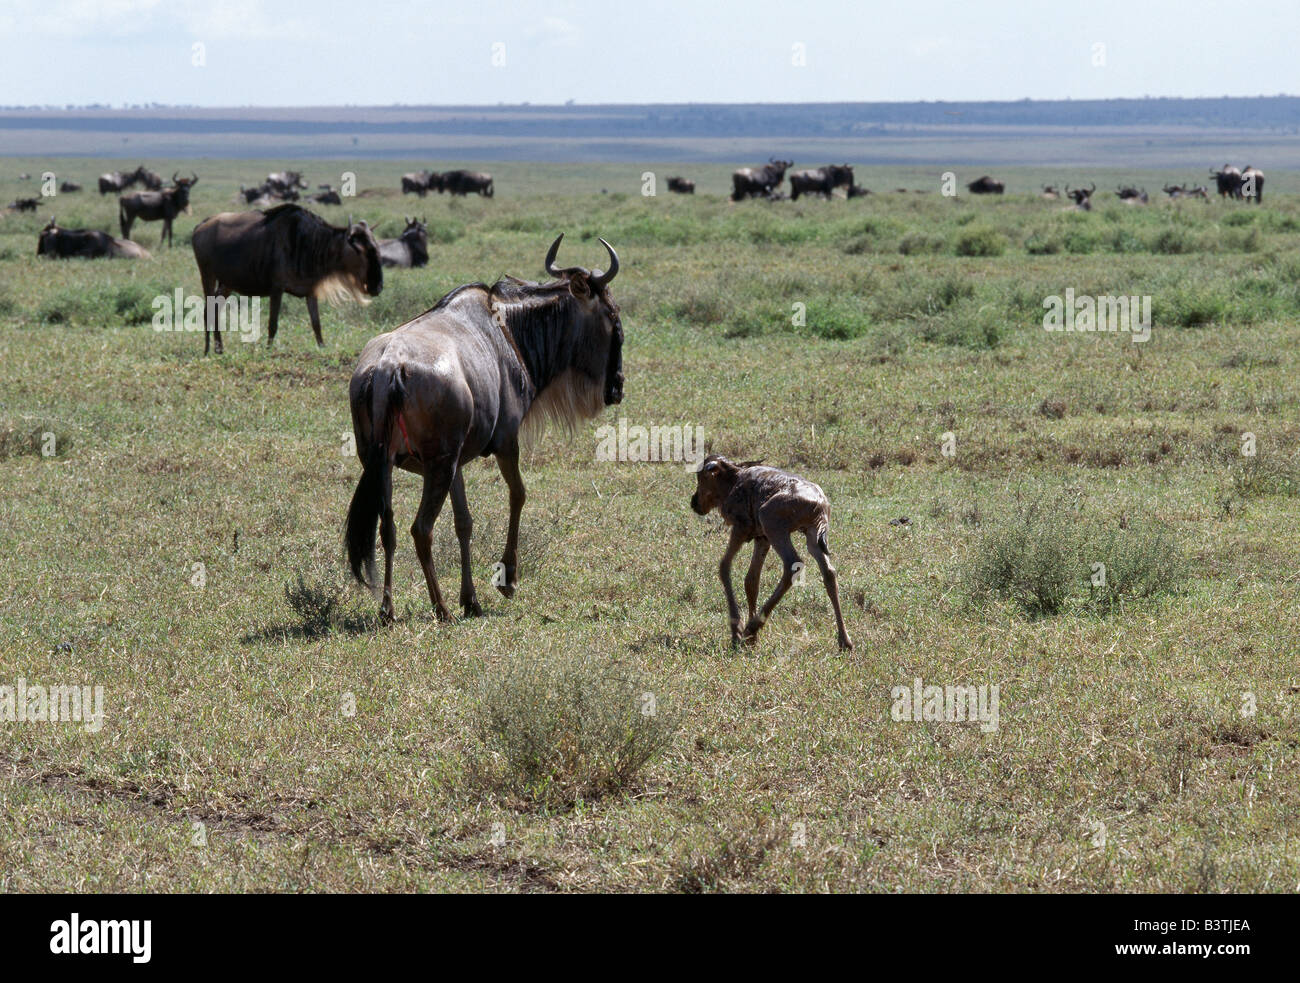 La Tanzanie, la Ngorongoro Conservation Area, Ndutu. Un veau nouveau-né Gnous staggers vers sa mère quelques minutes après la naissance. Quatre-vingt-dix pour cent de tous les gnous, ou blanc-gnu barbus, les veaux sont nés dans la région du lac Ndutu et les plaines du Serengeti dans une période de trois semaines entre février et mars de chaque année. Banque D'Images